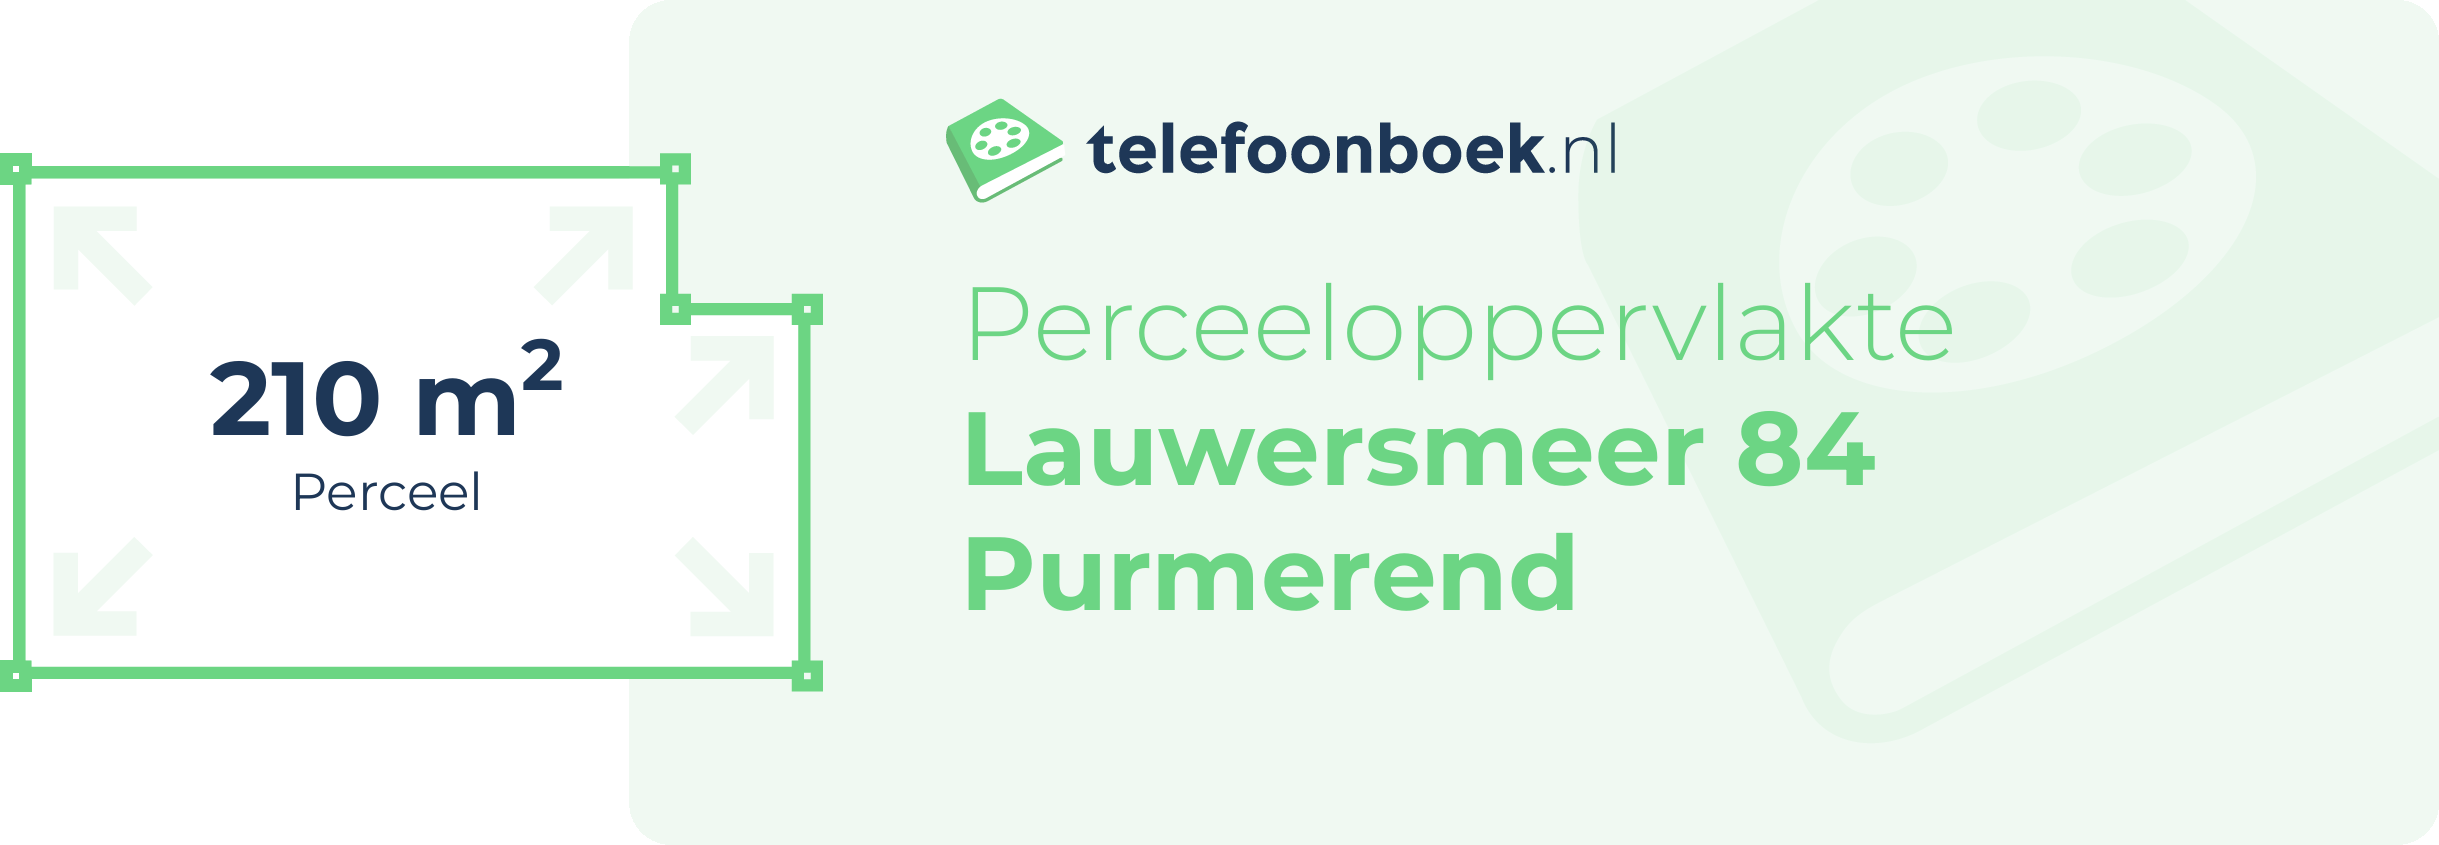 Perceeloppervlakte Lauwersmeer 84 Purmerend